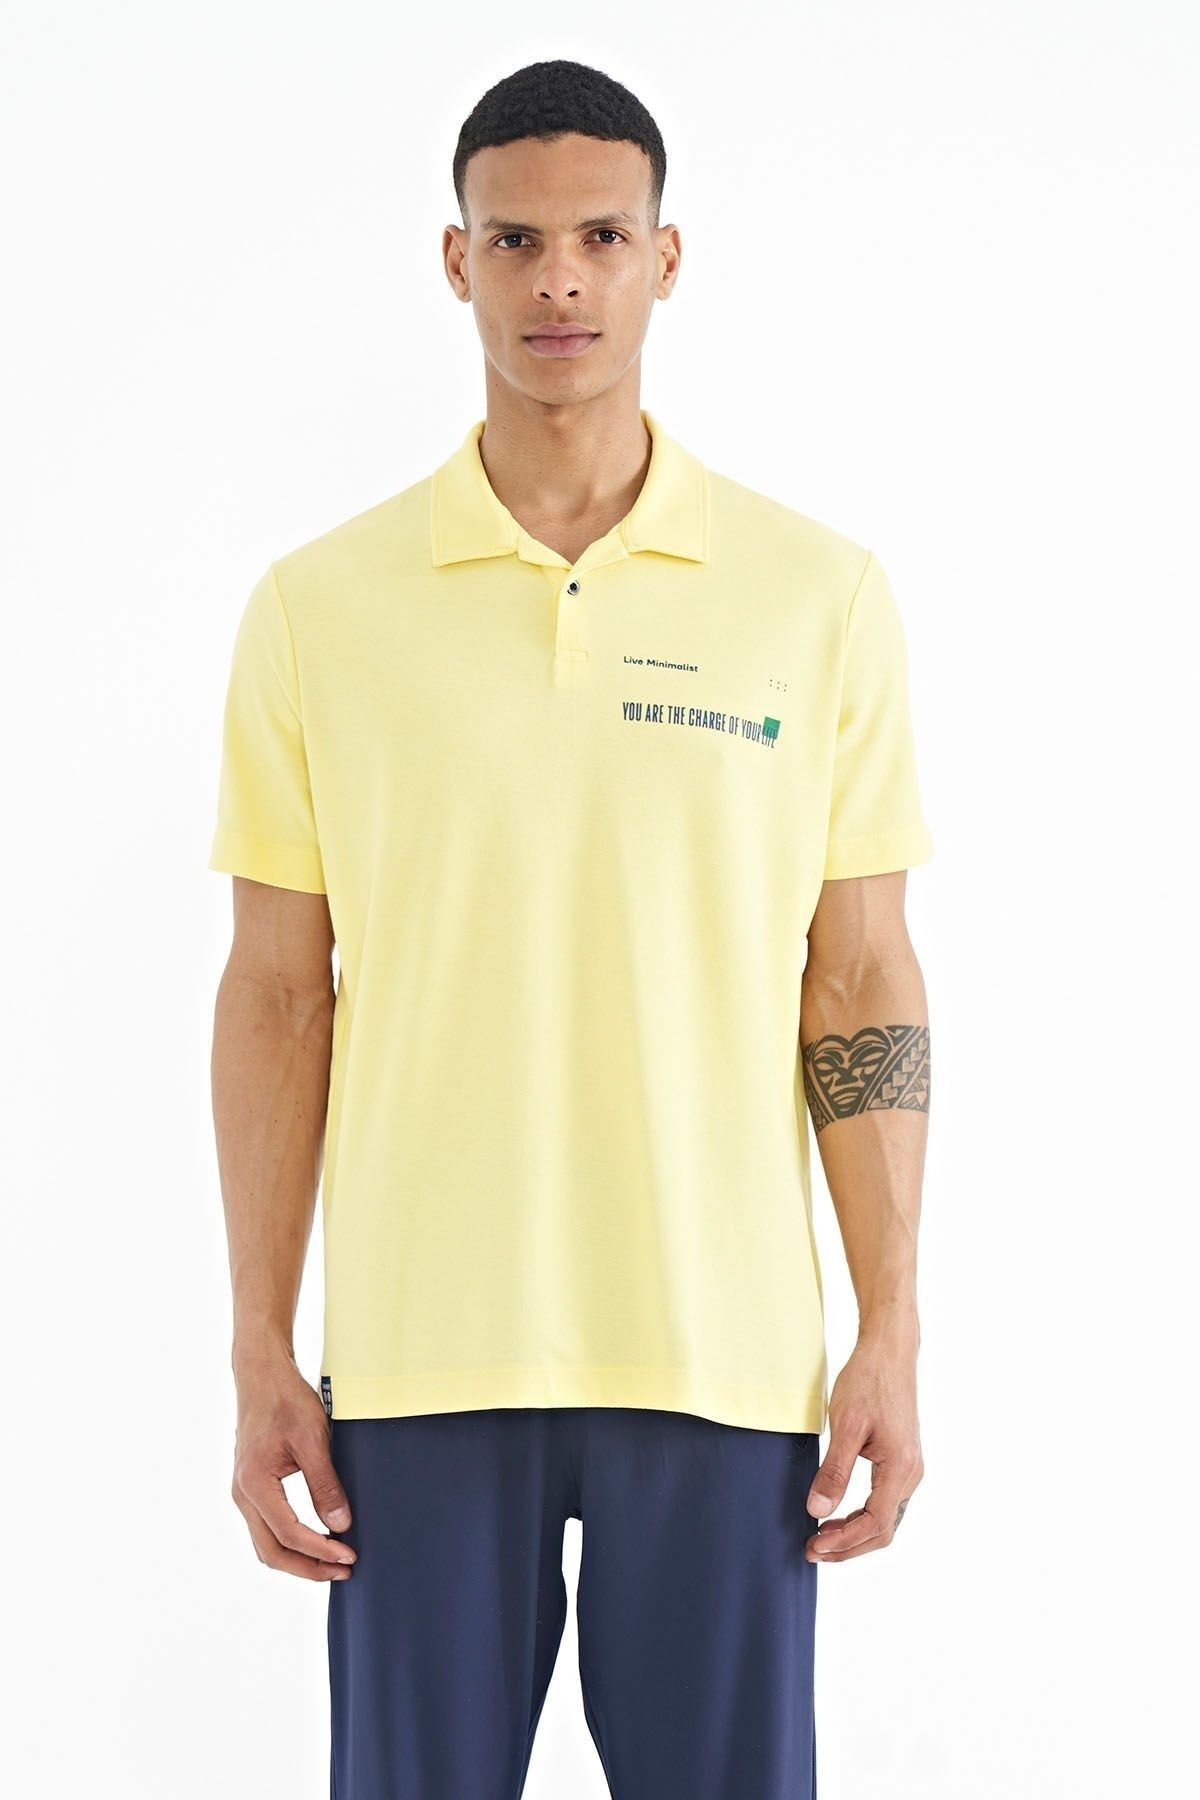 TOMMY LIFE Sarı Yazı Baskılı Standart Form Polo Yaka Erkek T-shirt - 88236